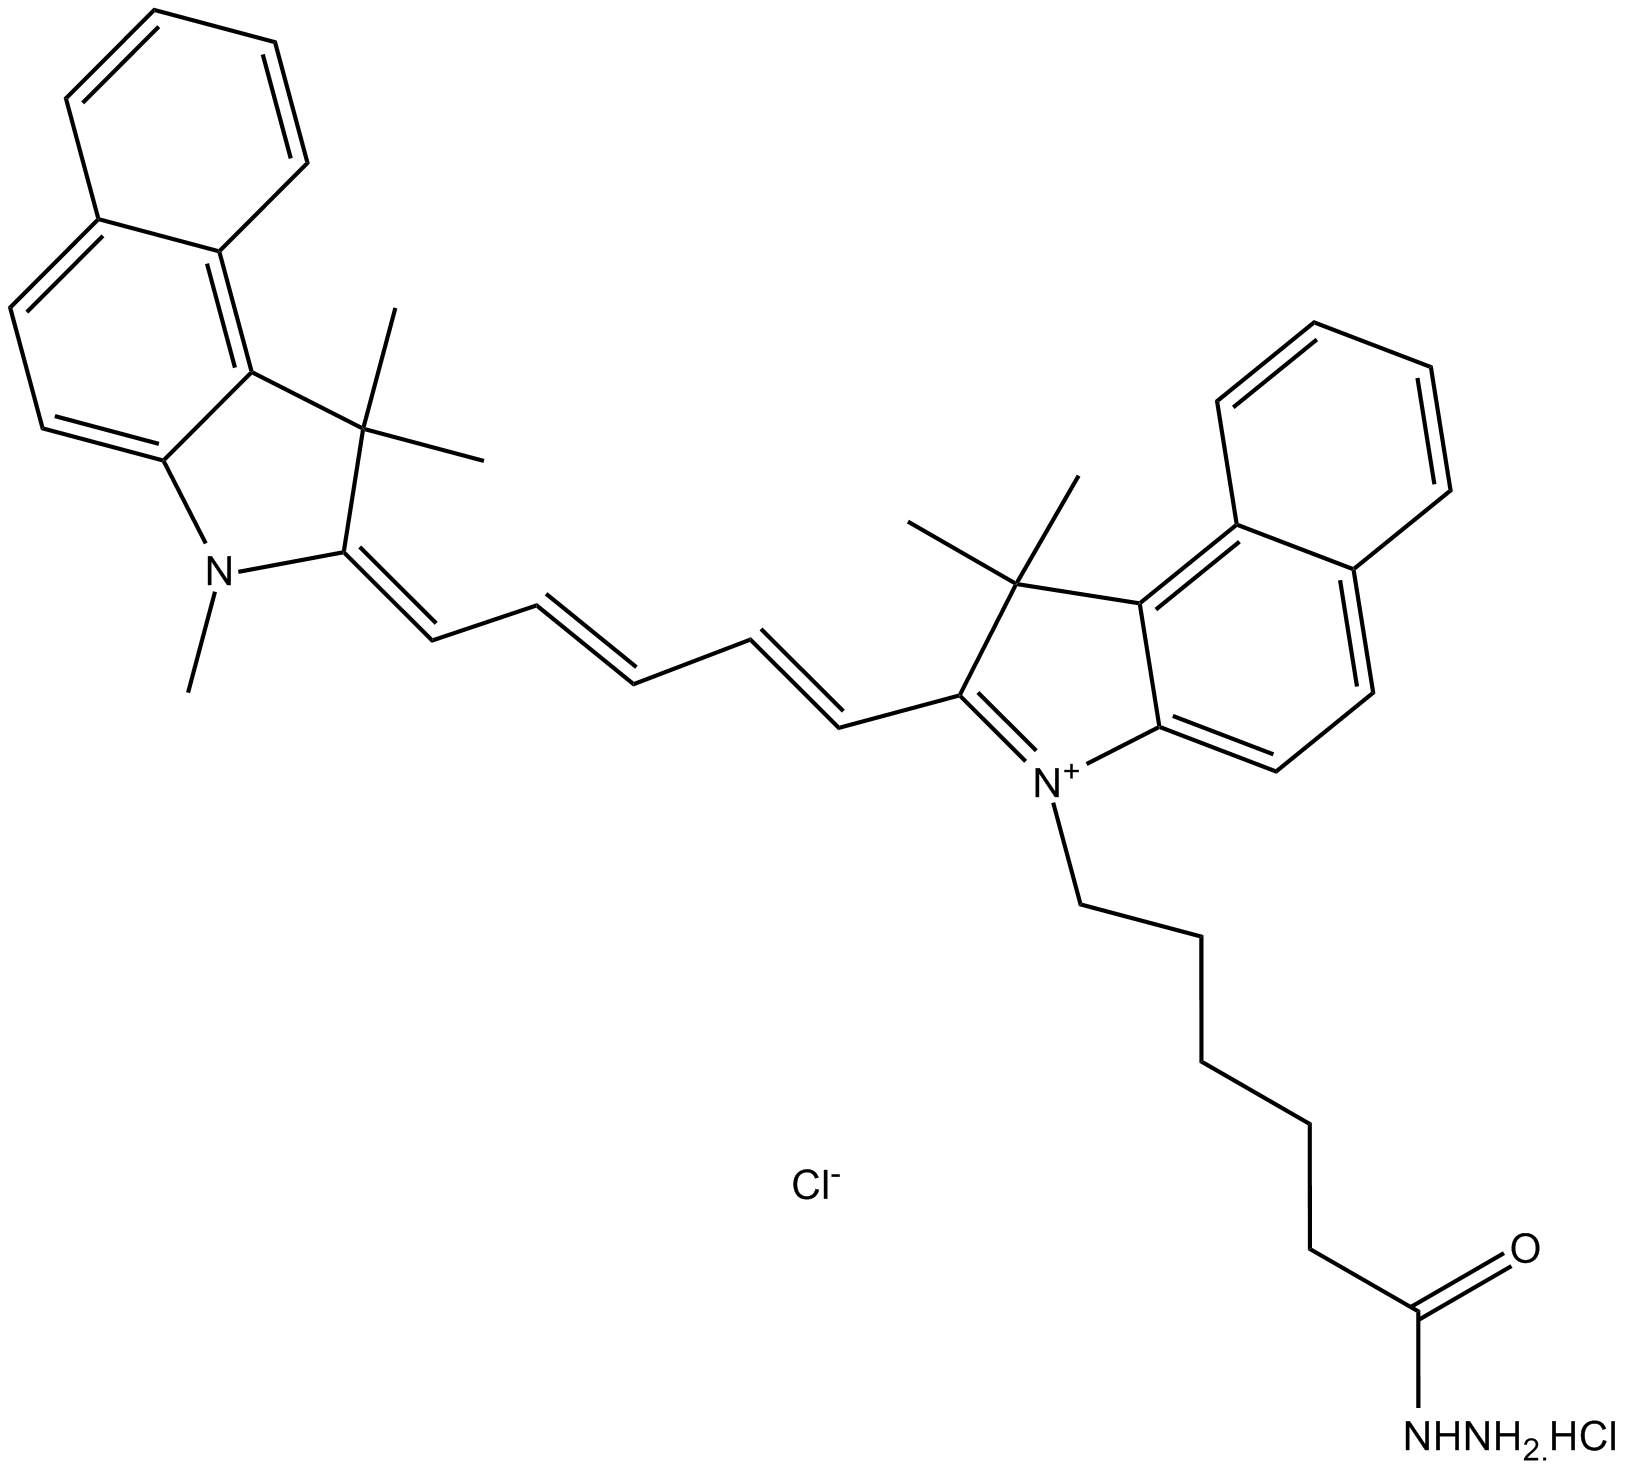 Cy5.5 hydrazide